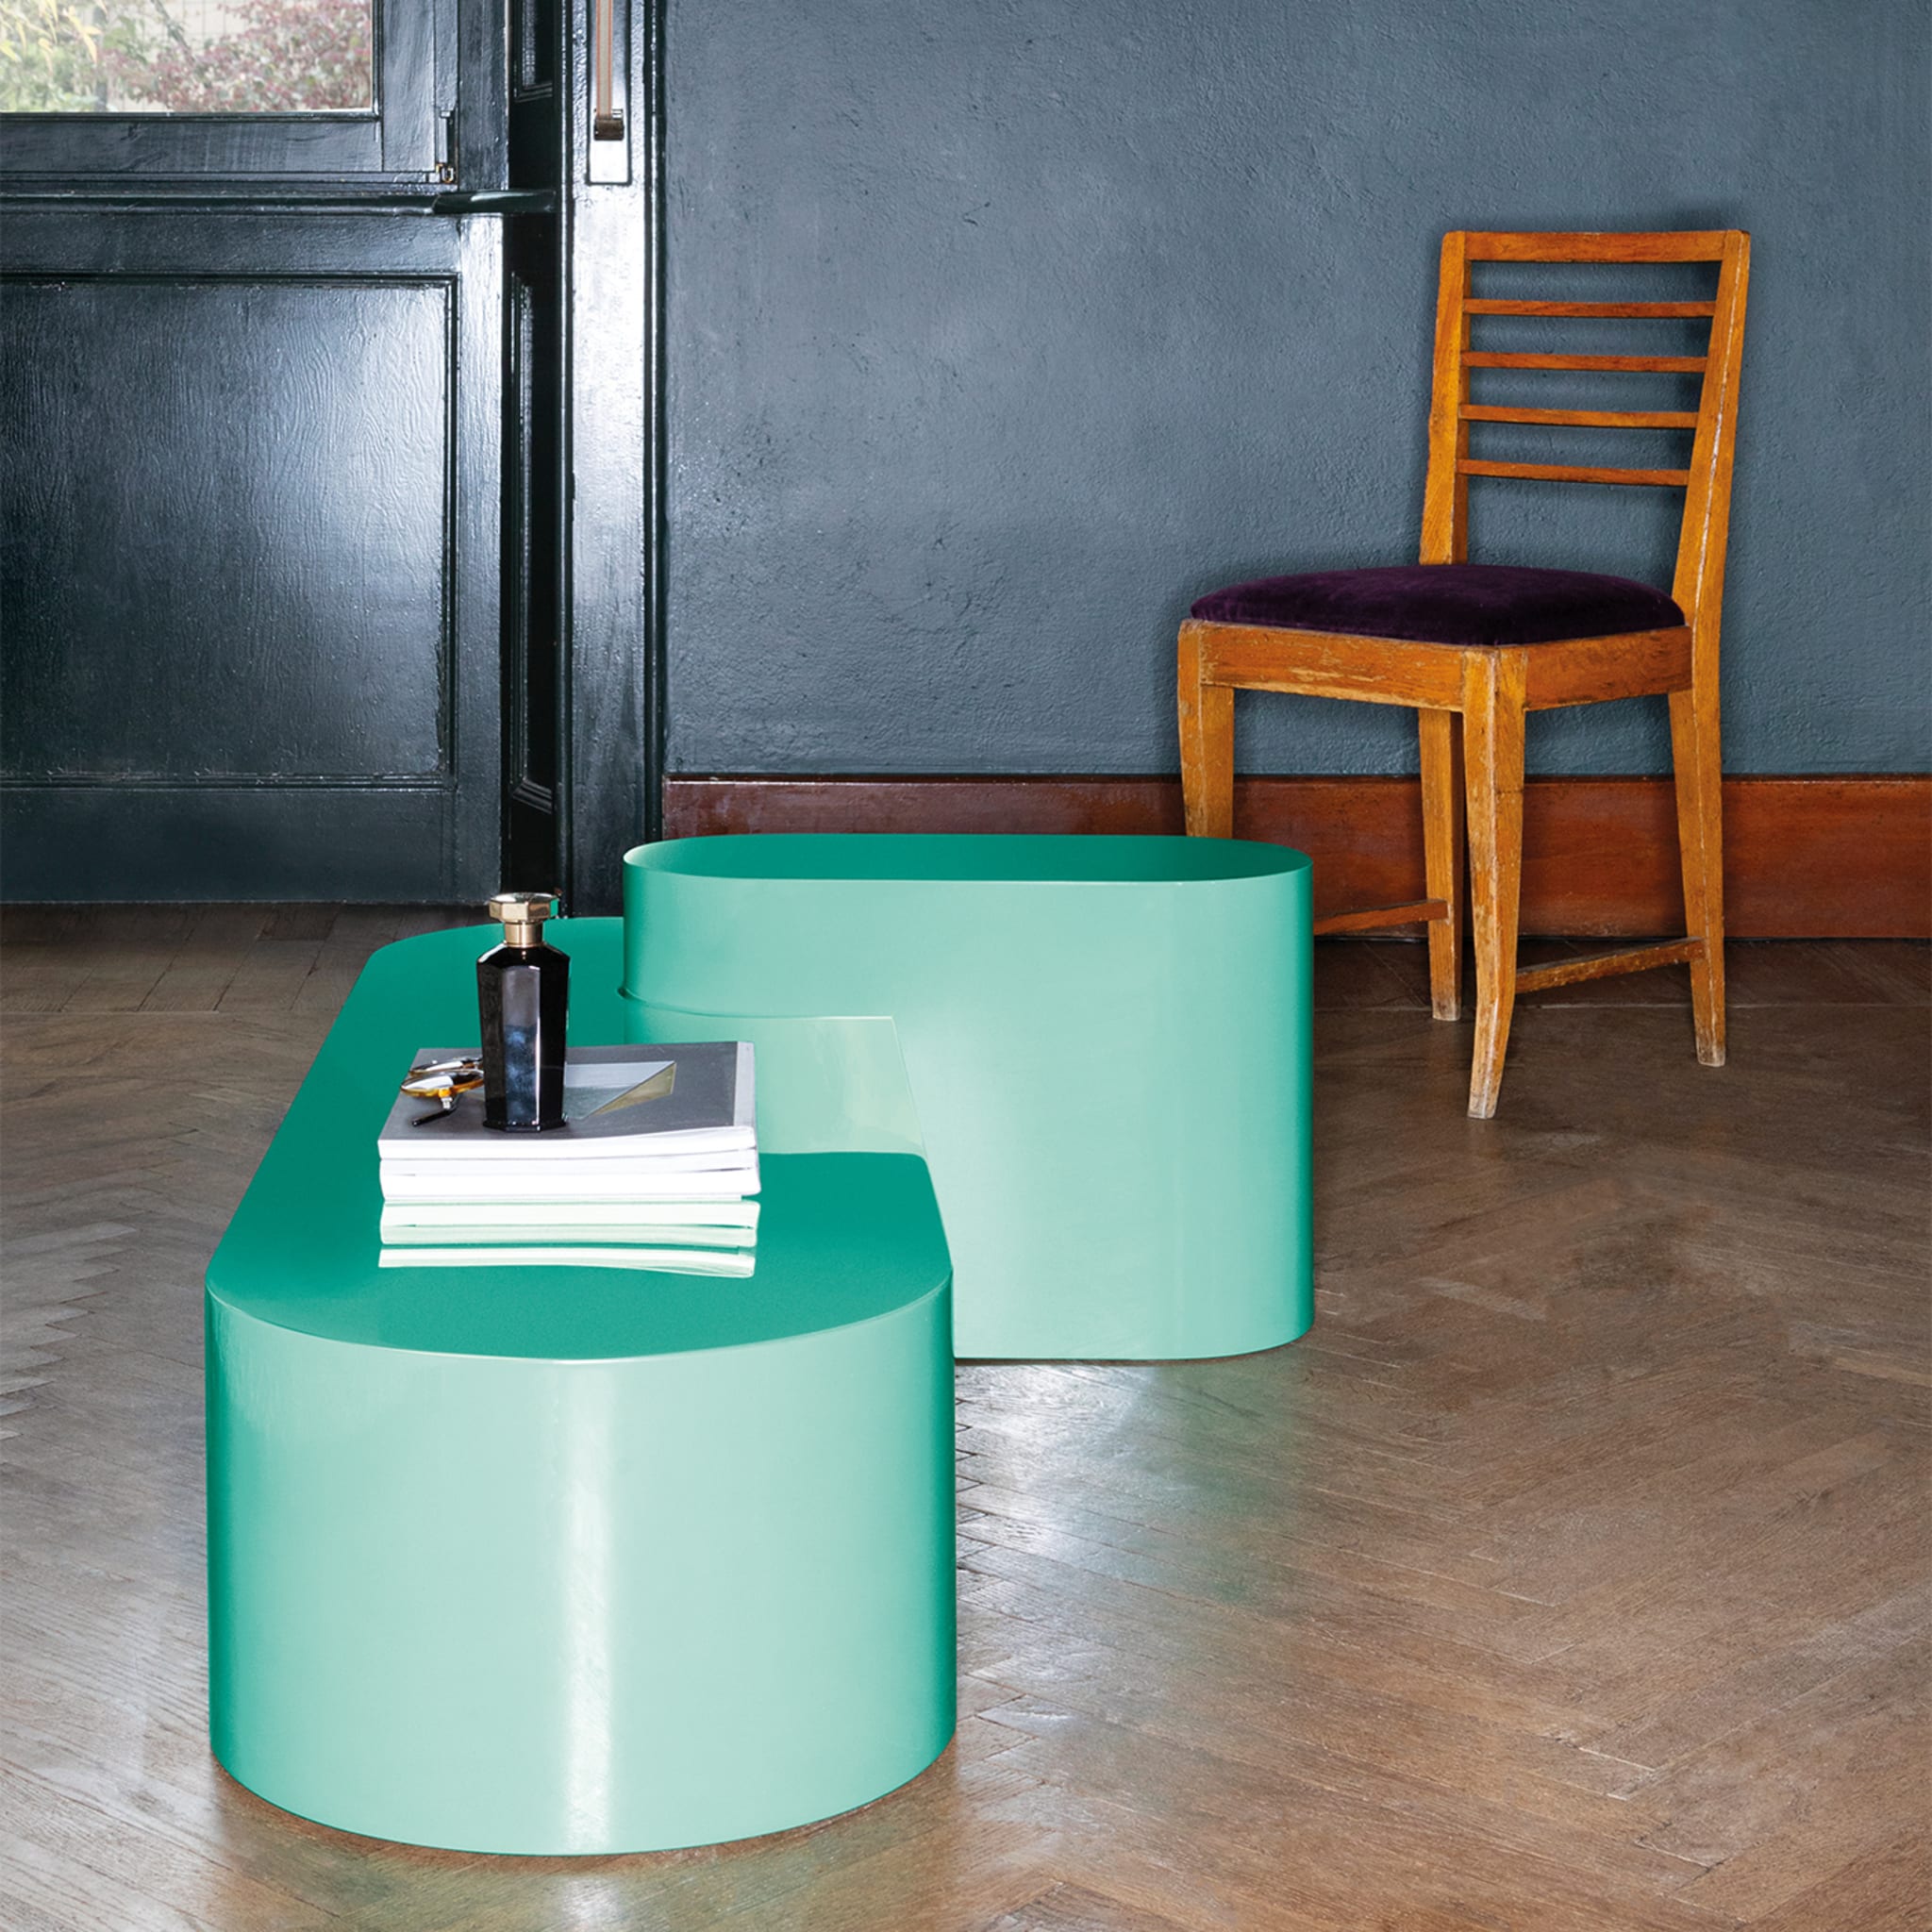 Atollo Green Coffee Table by Dainelli Studio - Alternative view 2